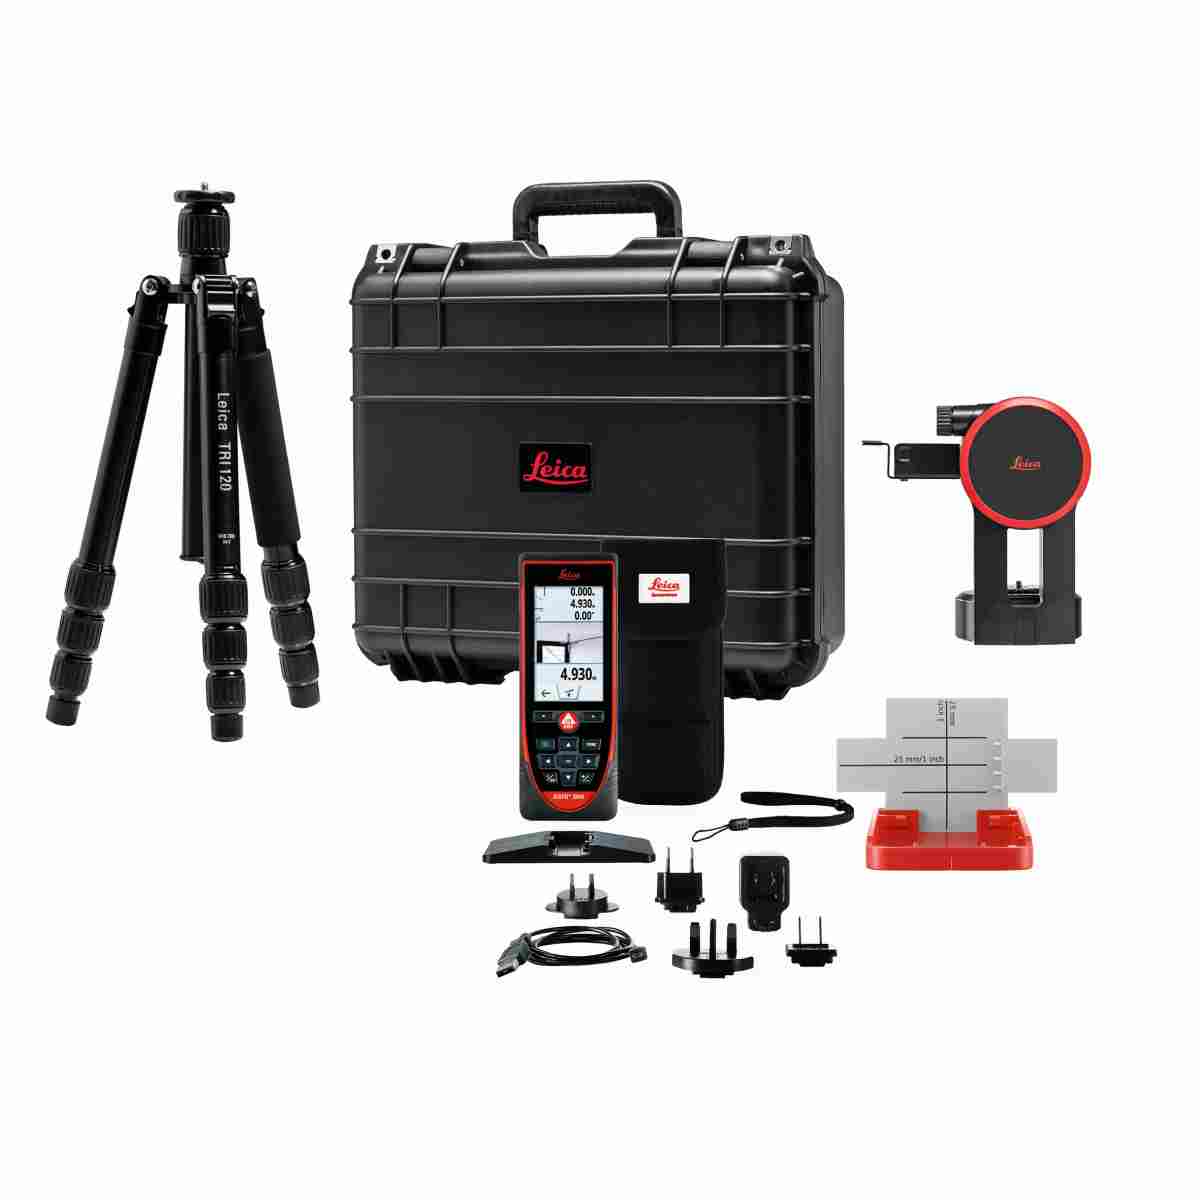 Entfernungsmesser Leica DISTO™ S910 im Paket im Koffer mit FTA360-S, TRI120 und GZM3 Zieltafel